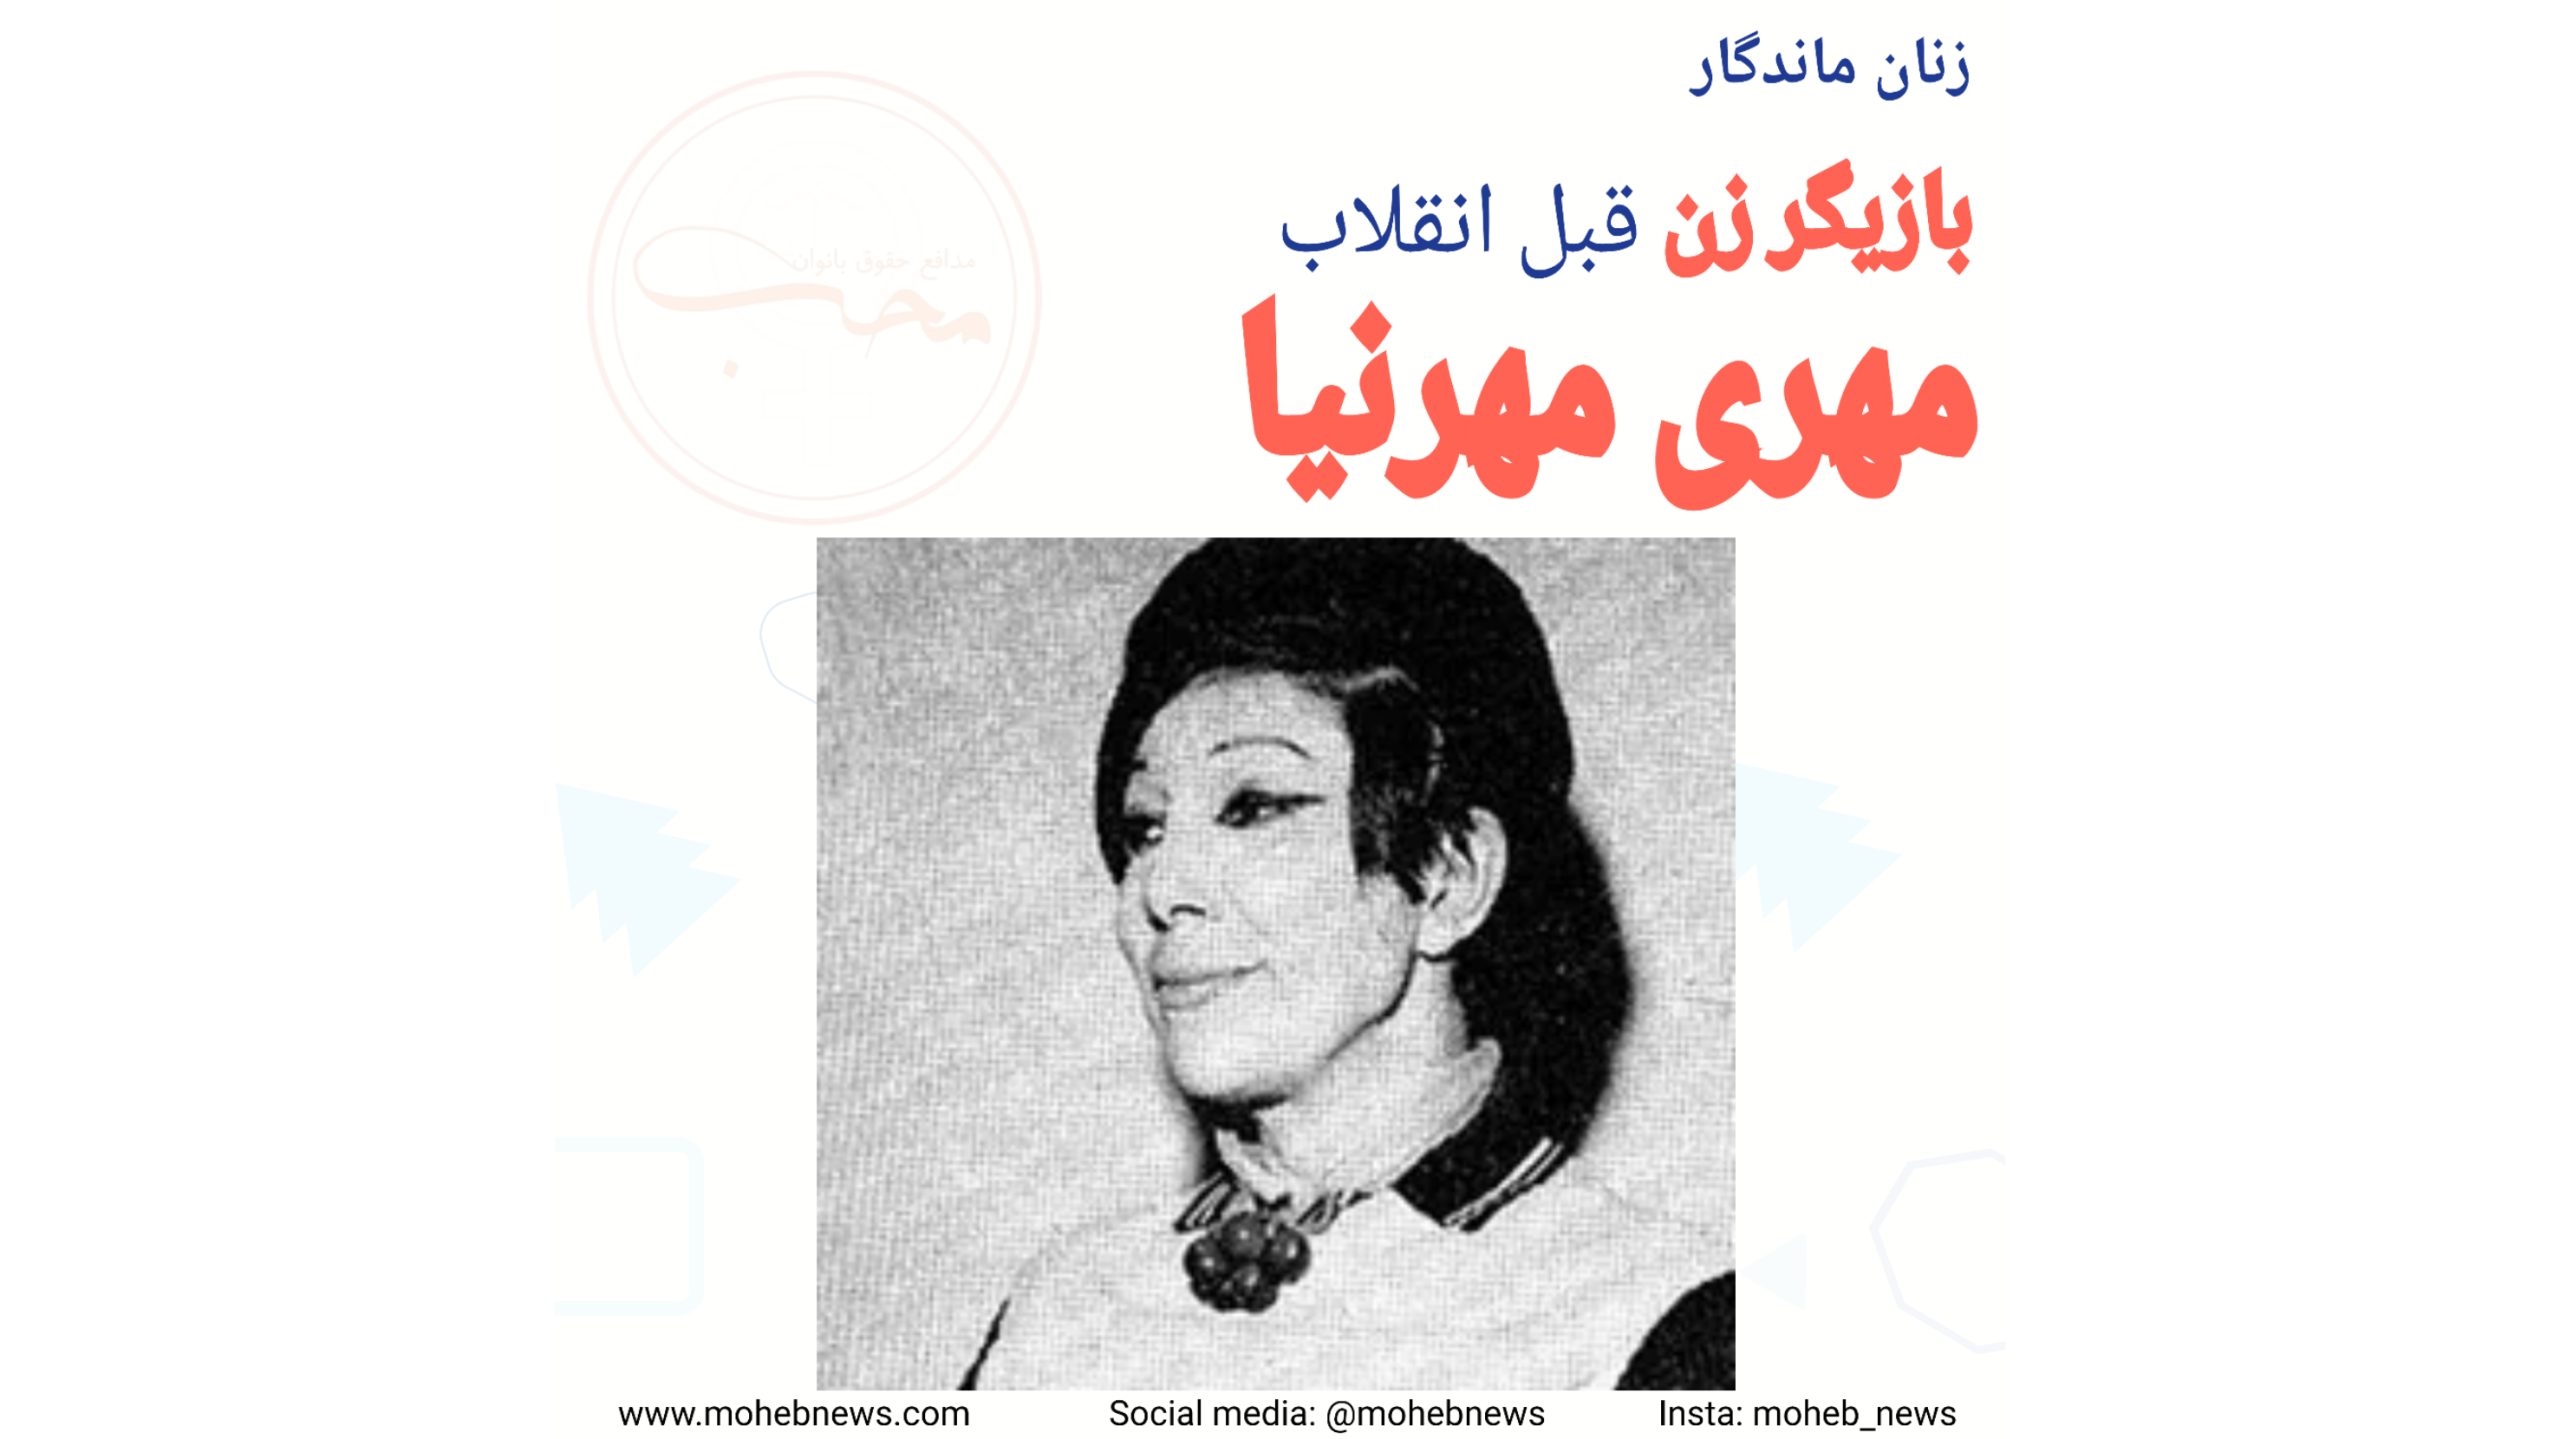 مهری مهرنیا، بازیگر زن قبل انقلاب | محب نیوز